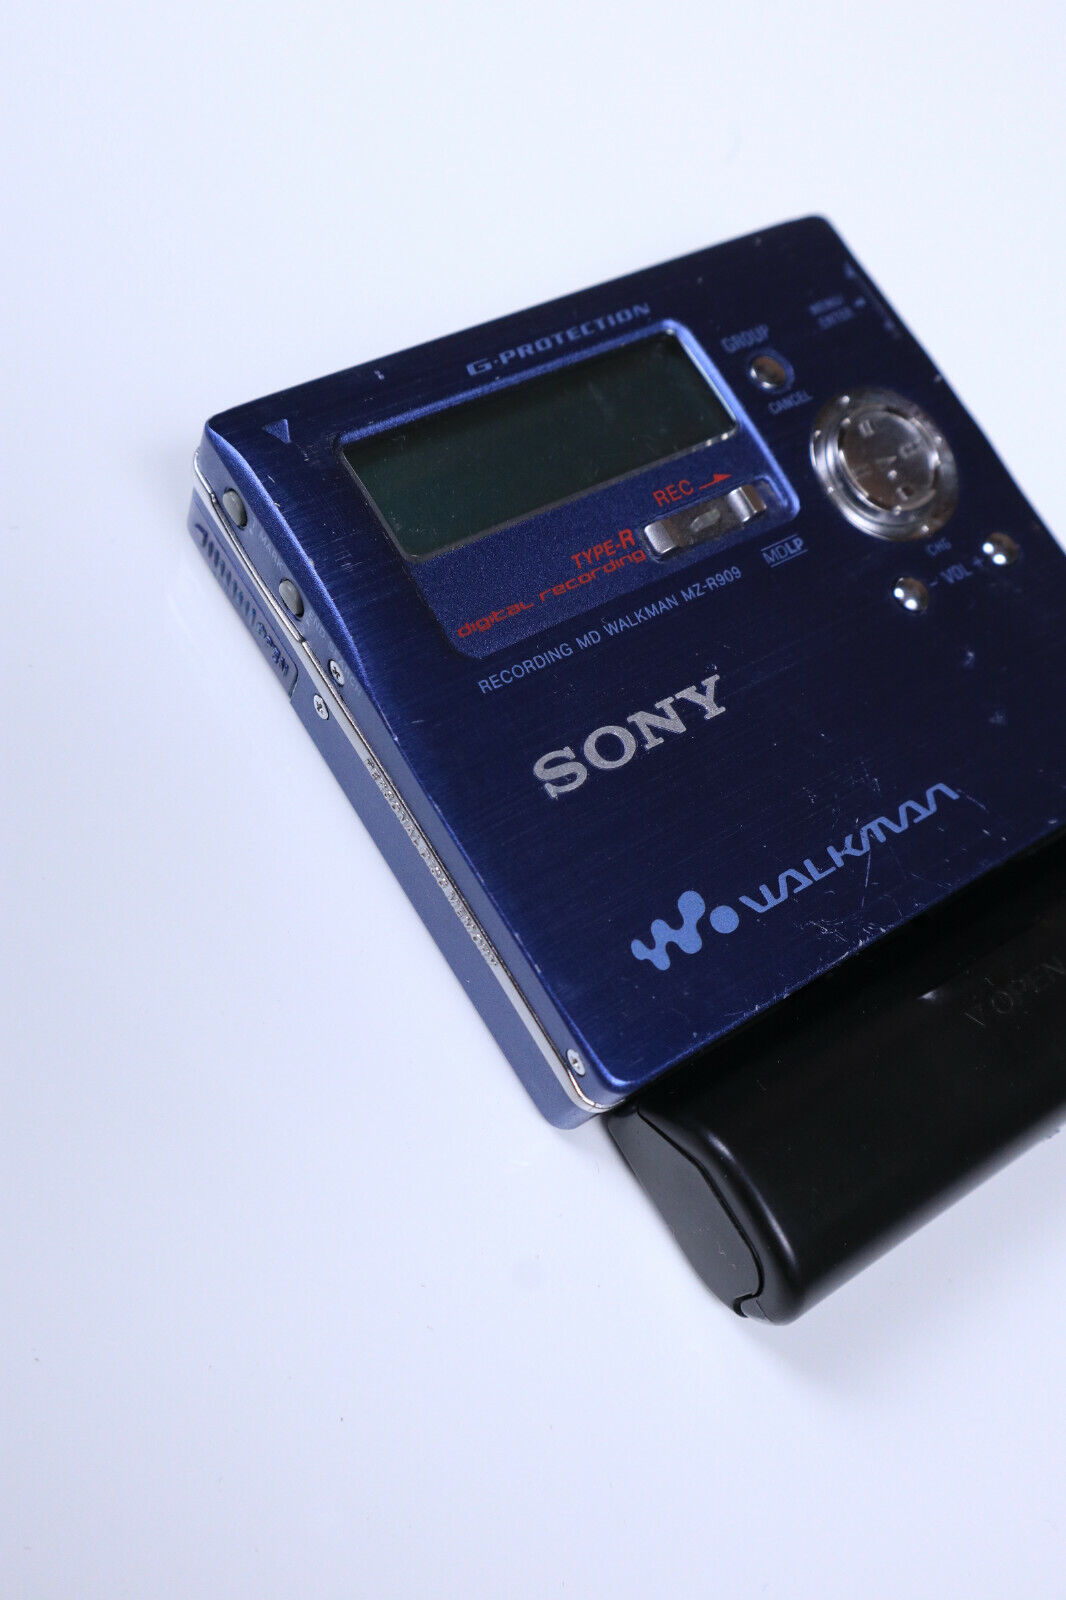 Sony md minidisc player MZ-R909 working